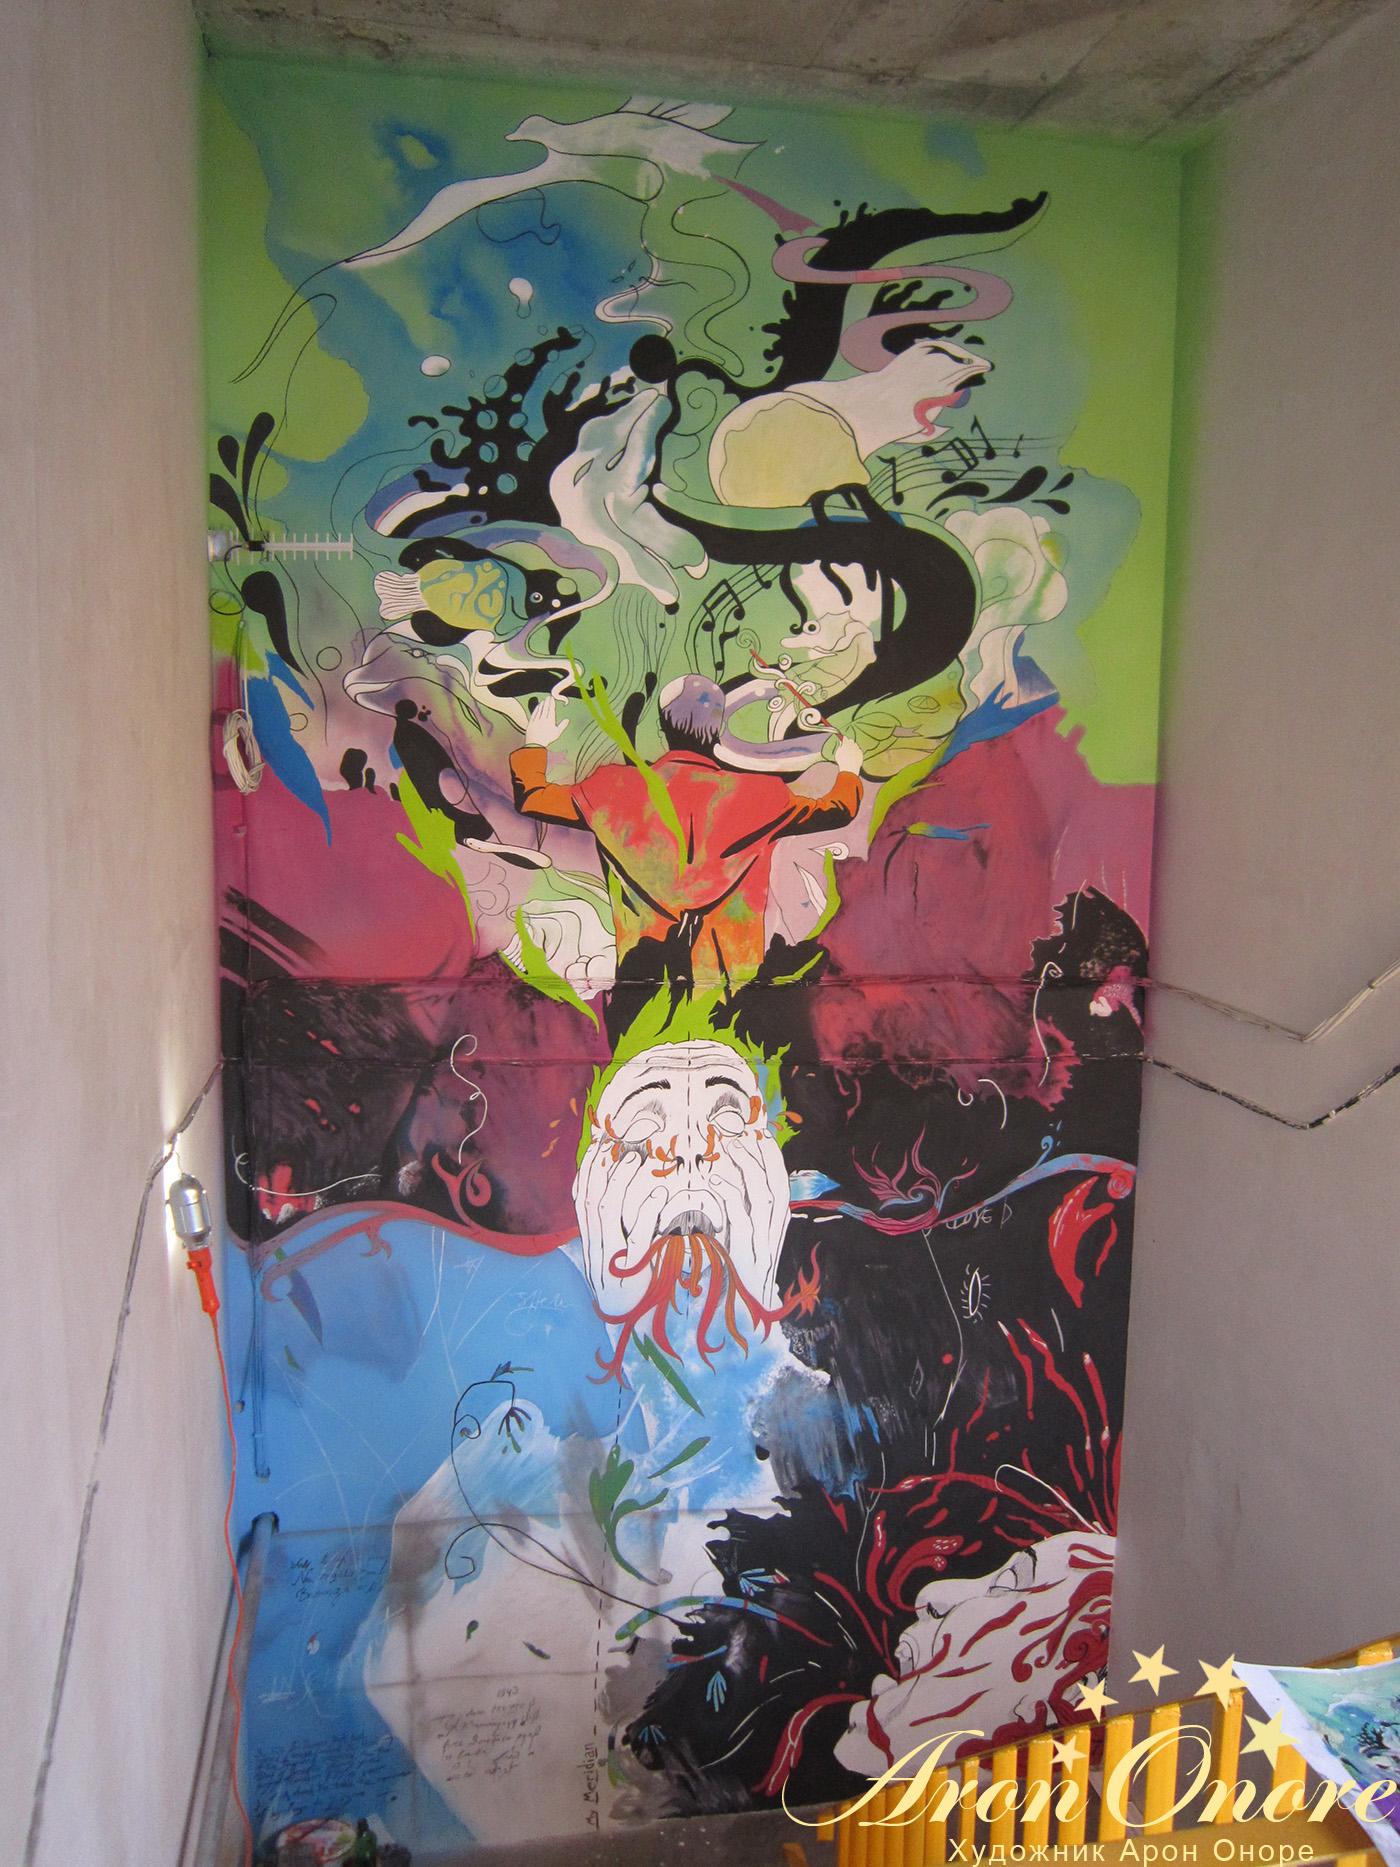 IMИнтересный художественный рисунок на стене здания фотостудии